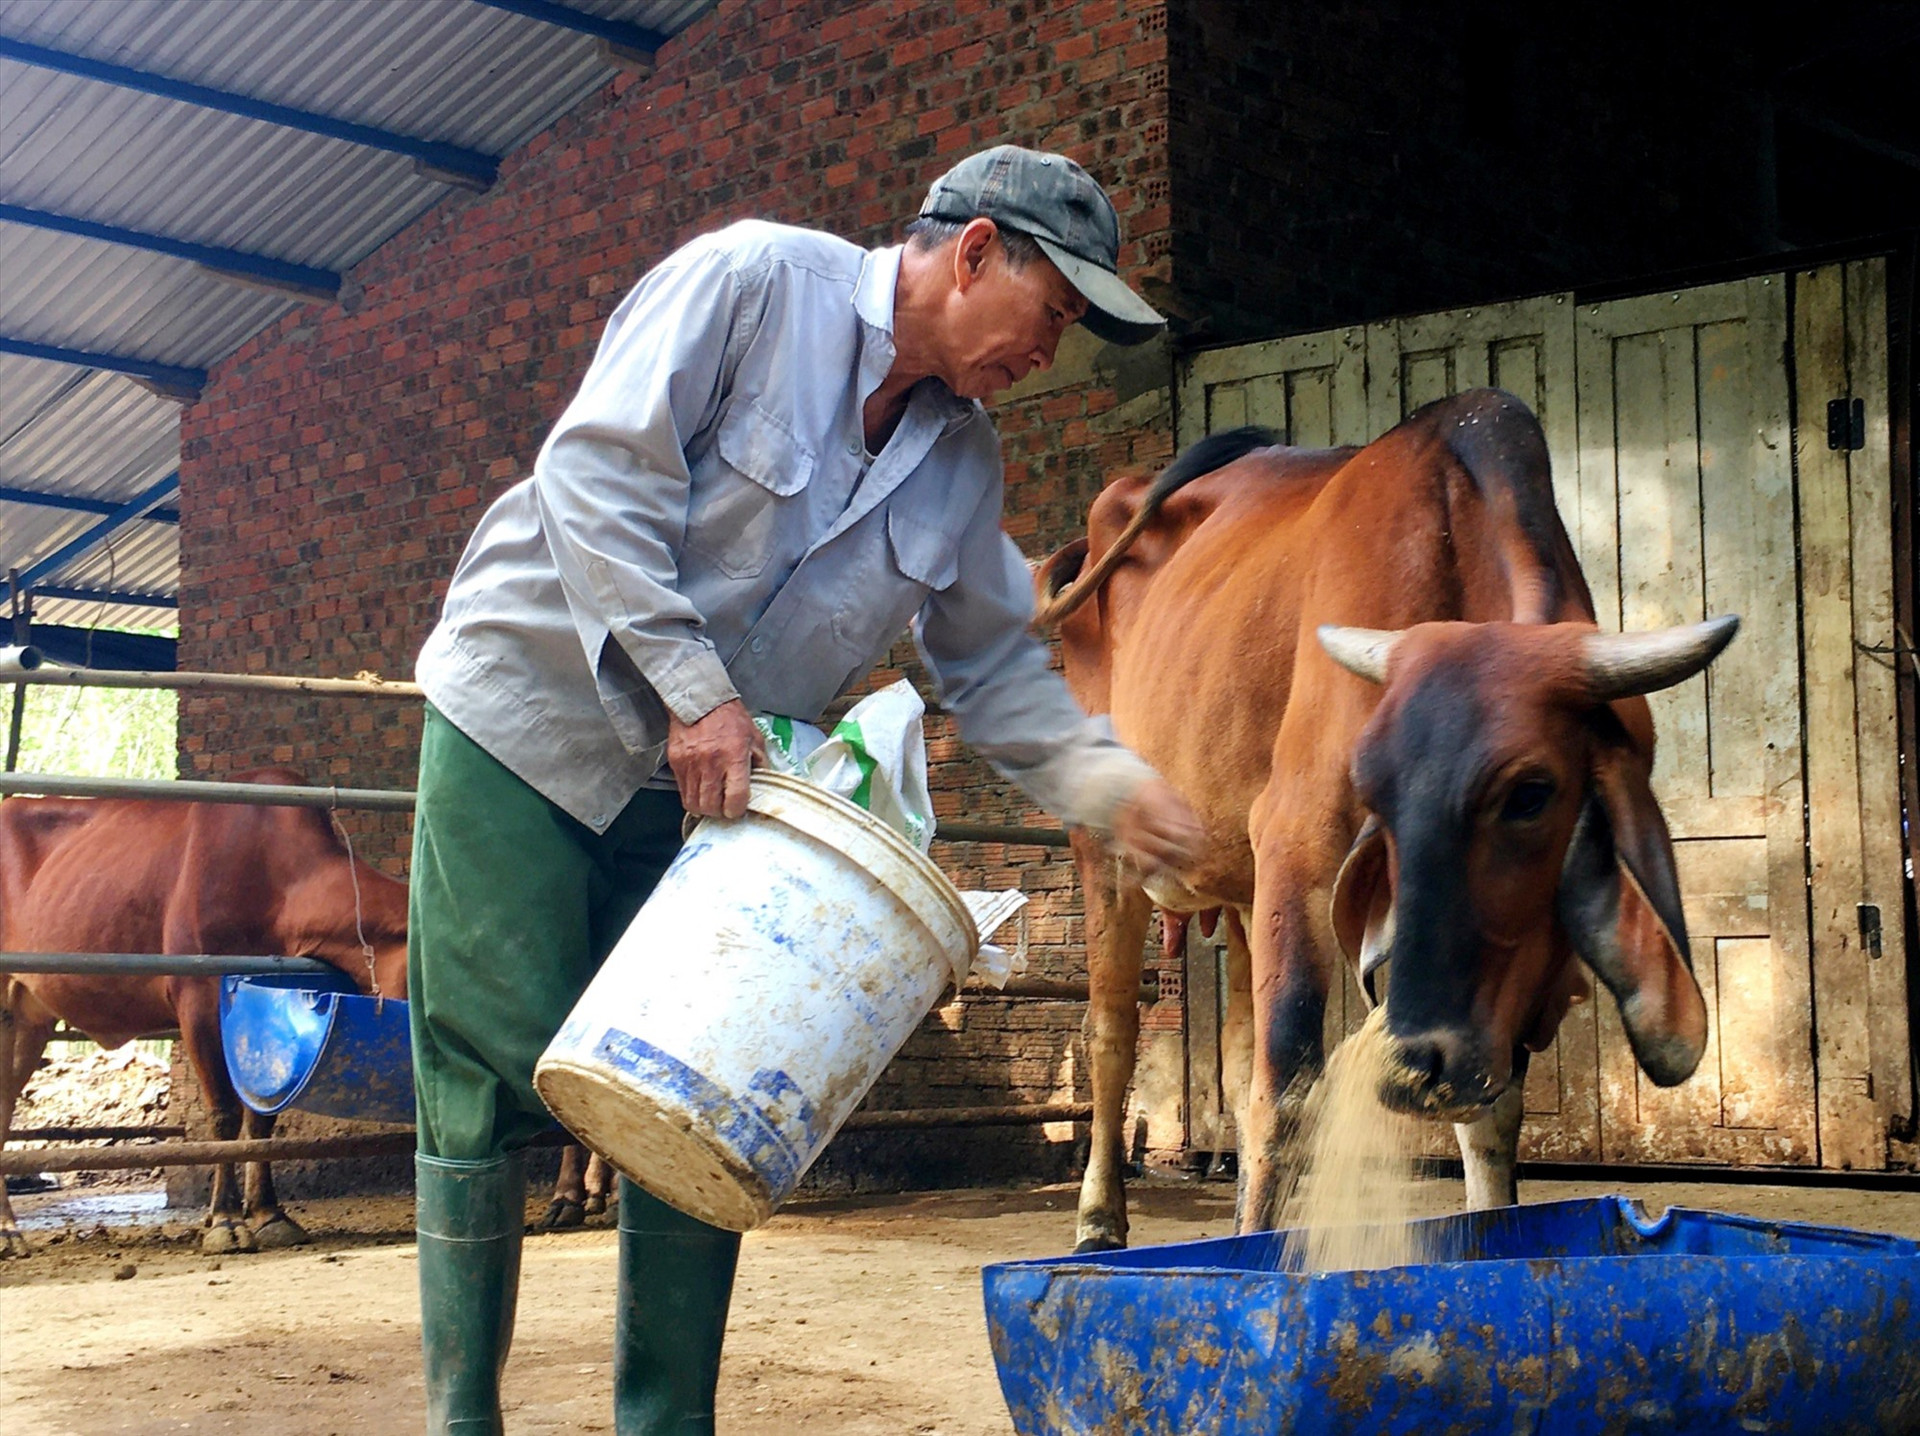 Người chăn nuôi cần thường xuyên vệ sinh chuồng trại và phun hóa chất diệt côn trùng để hạn chế sự lây lan của vi rút gây bệnh viêm da nổi cục. Ảnh: N.S